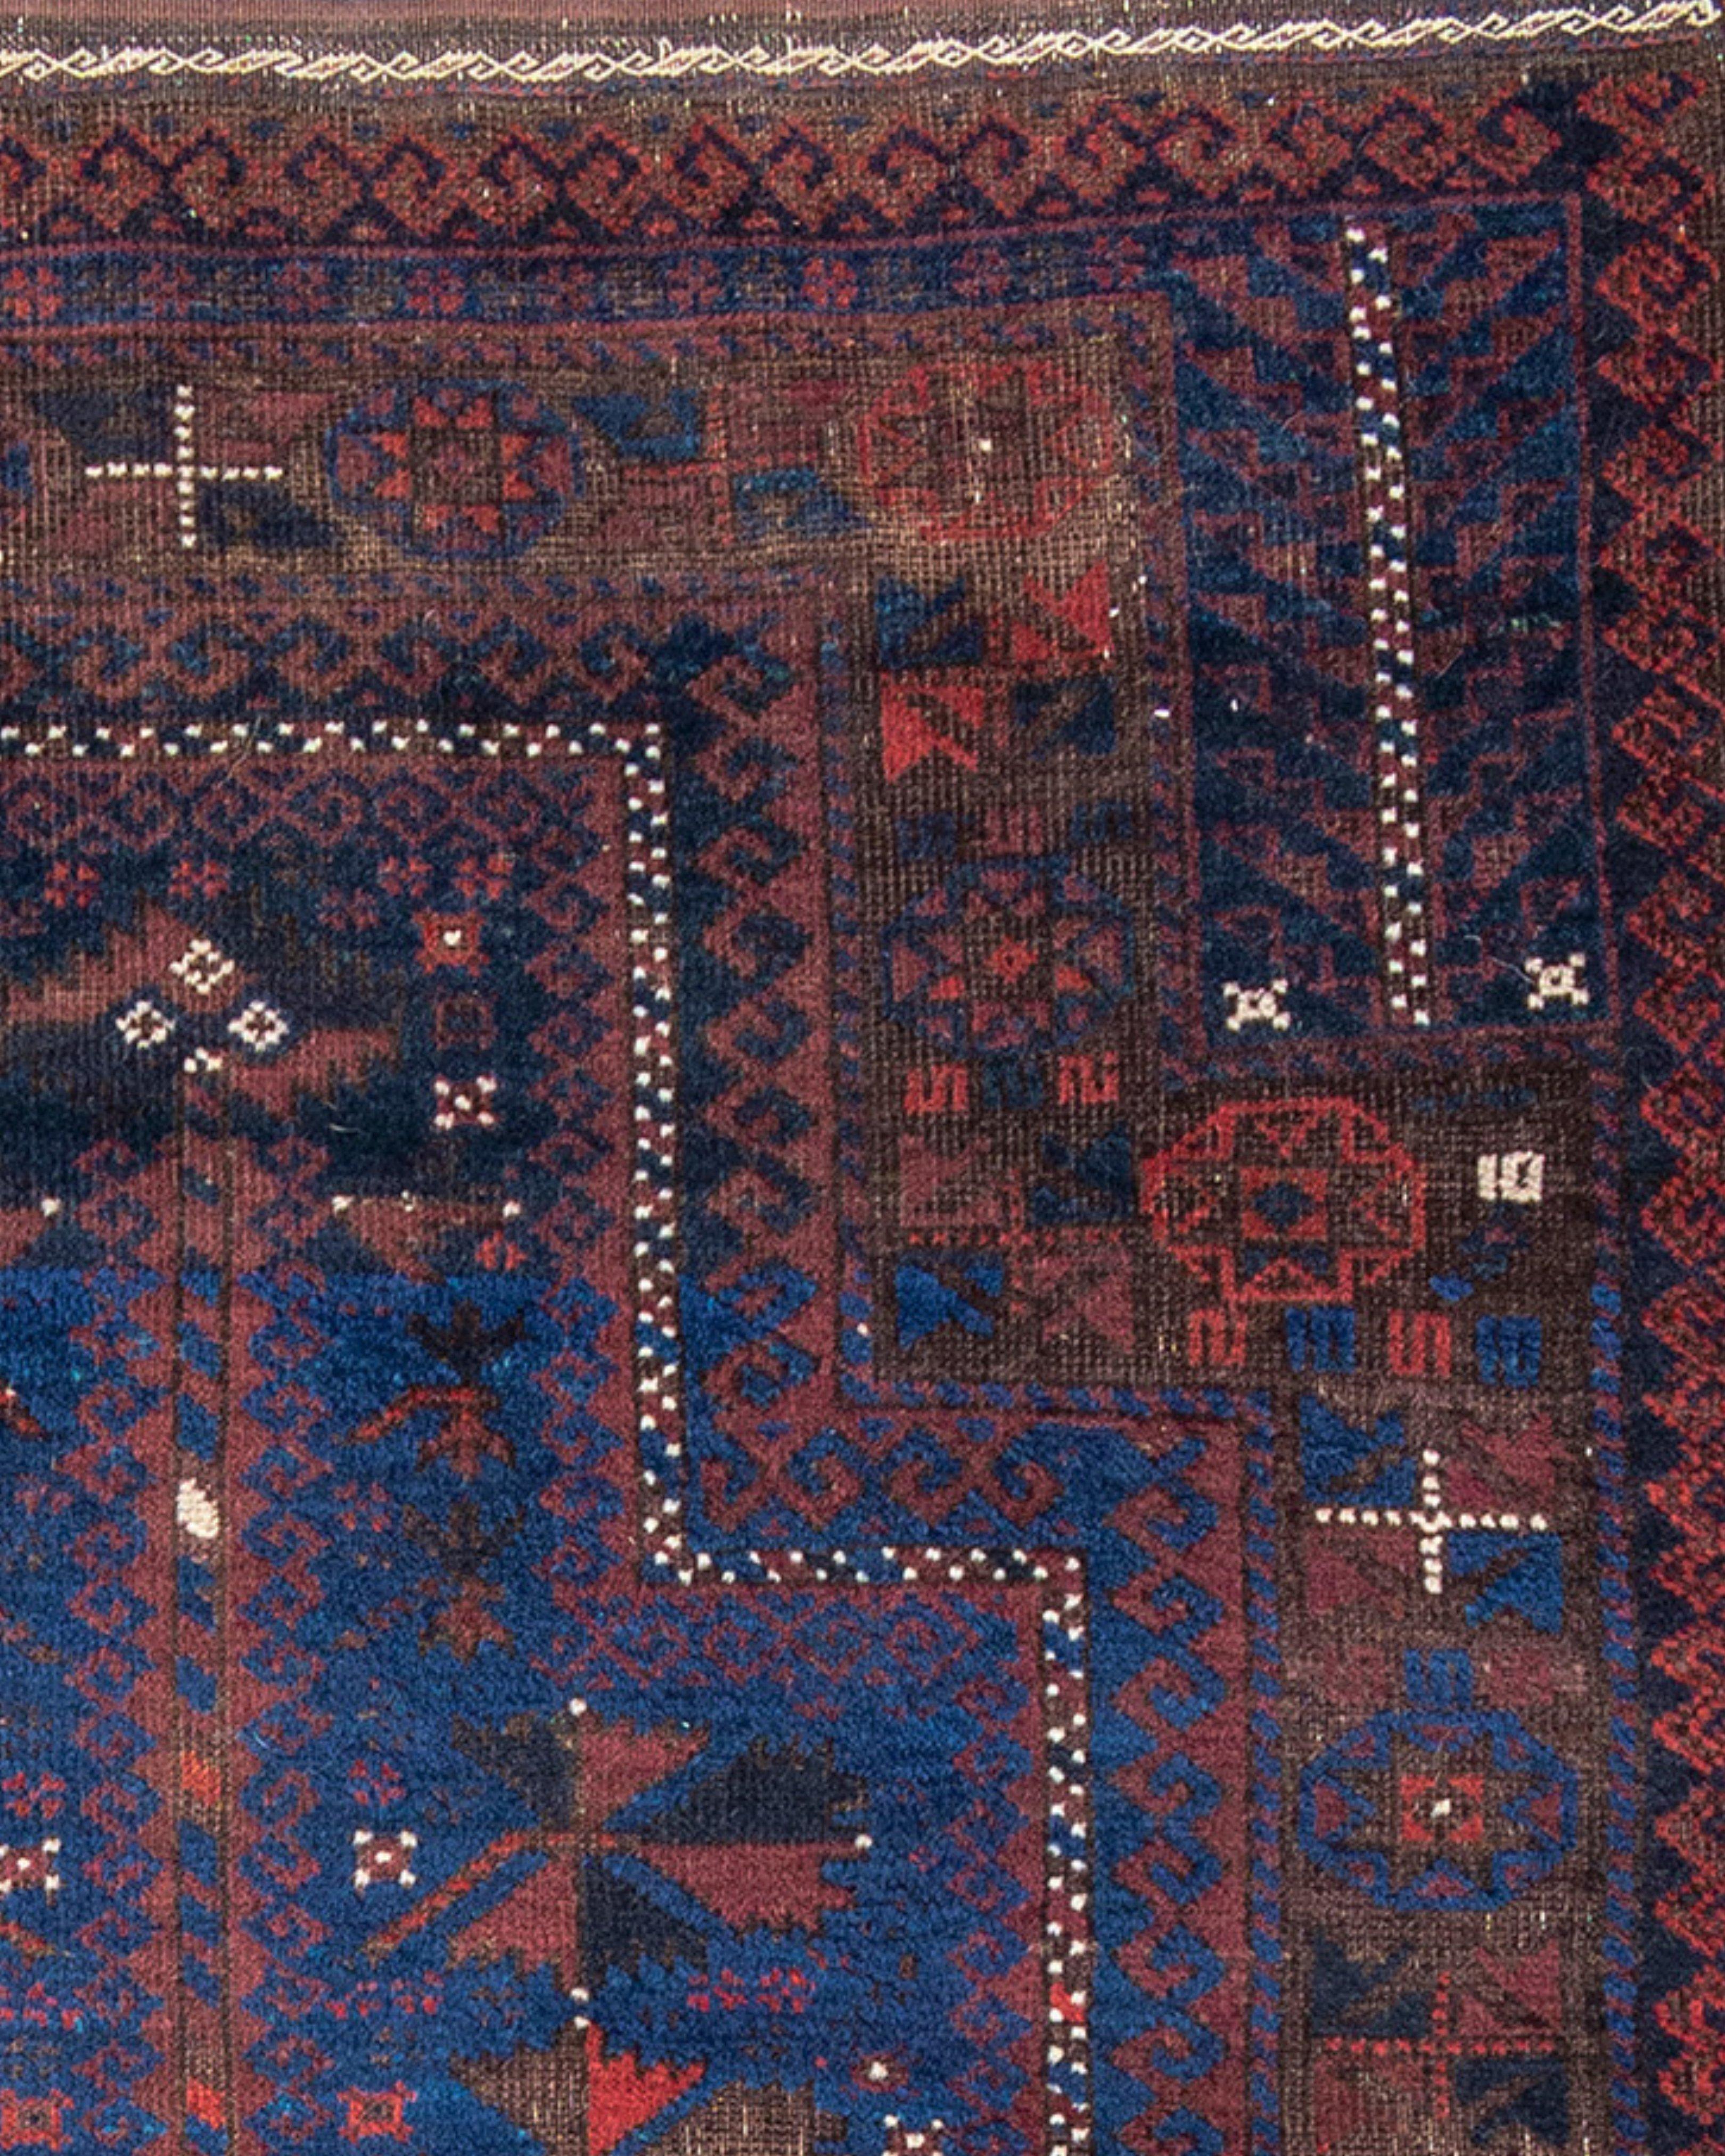 Ancien tapis de prière baloutche afghan, fin du 19e siècle

Tapis de prière à fond bleu au dessin spacieux, probablement originaire du nord-est de la Perse. La bordure primaire complexe suggère la provenance ; un tel dessin est rarement (voire